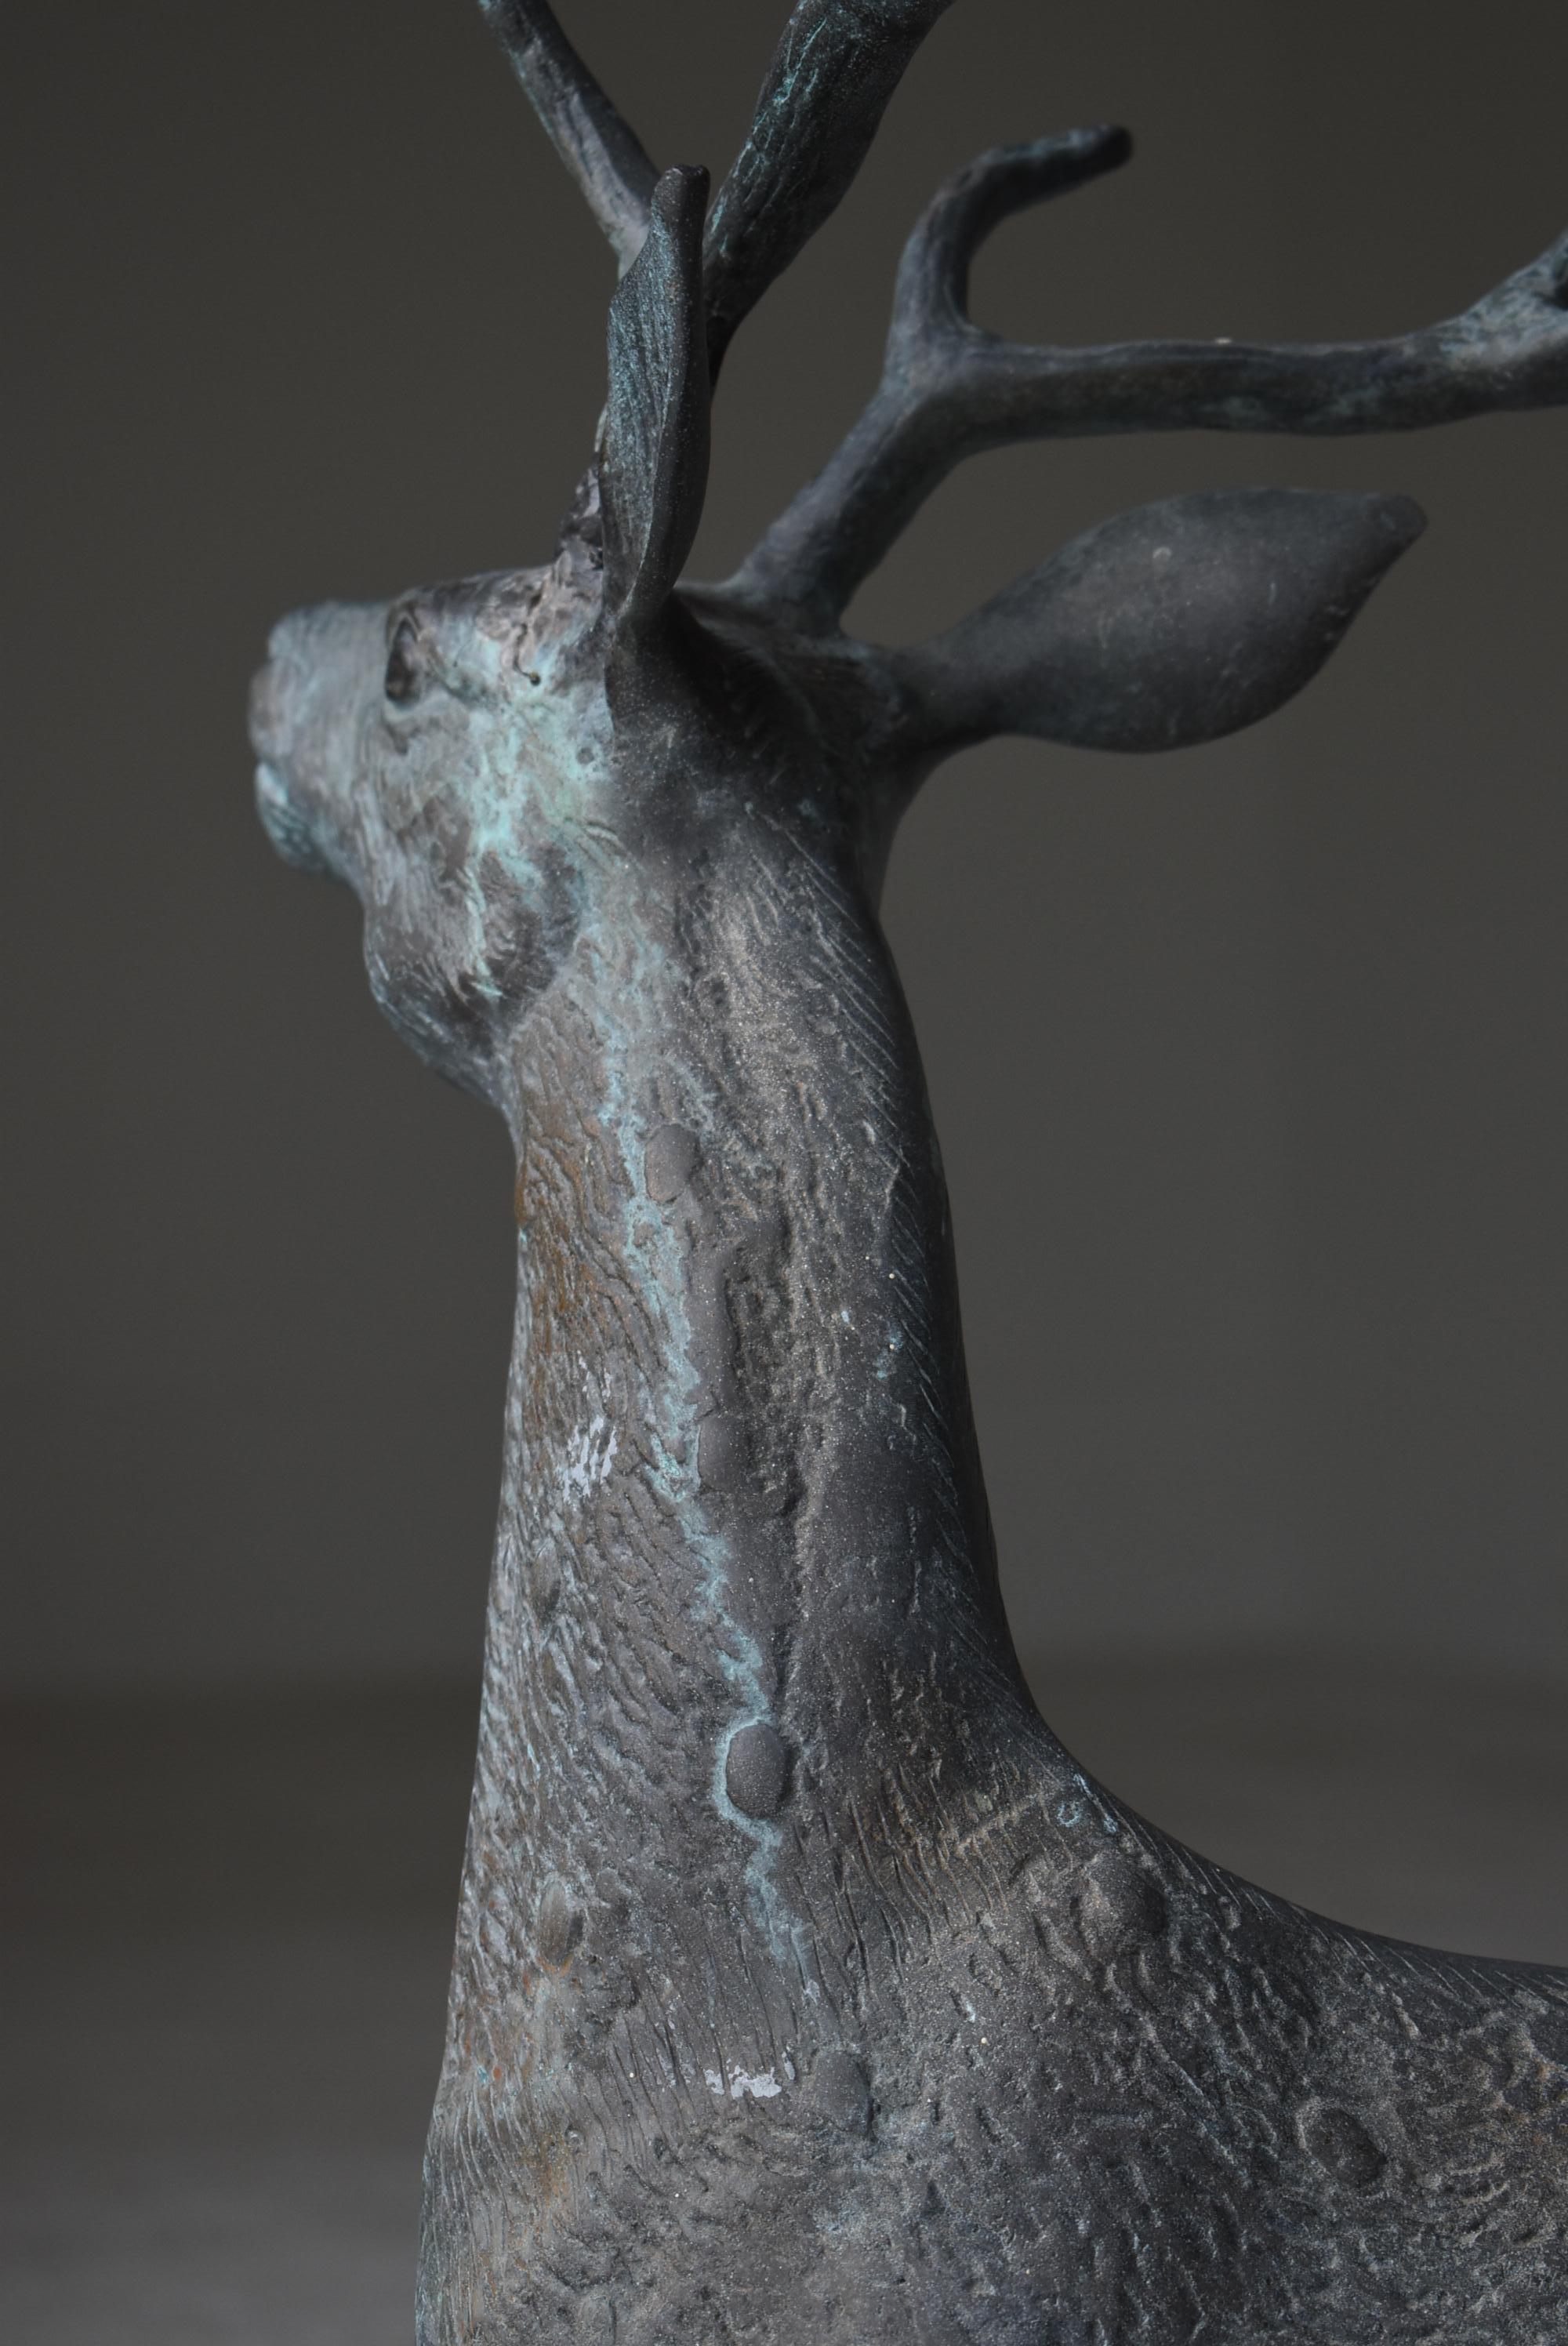 Japanese Old Copper Deer Object/Vintage Figurine Animal Decor Decoration Art 10